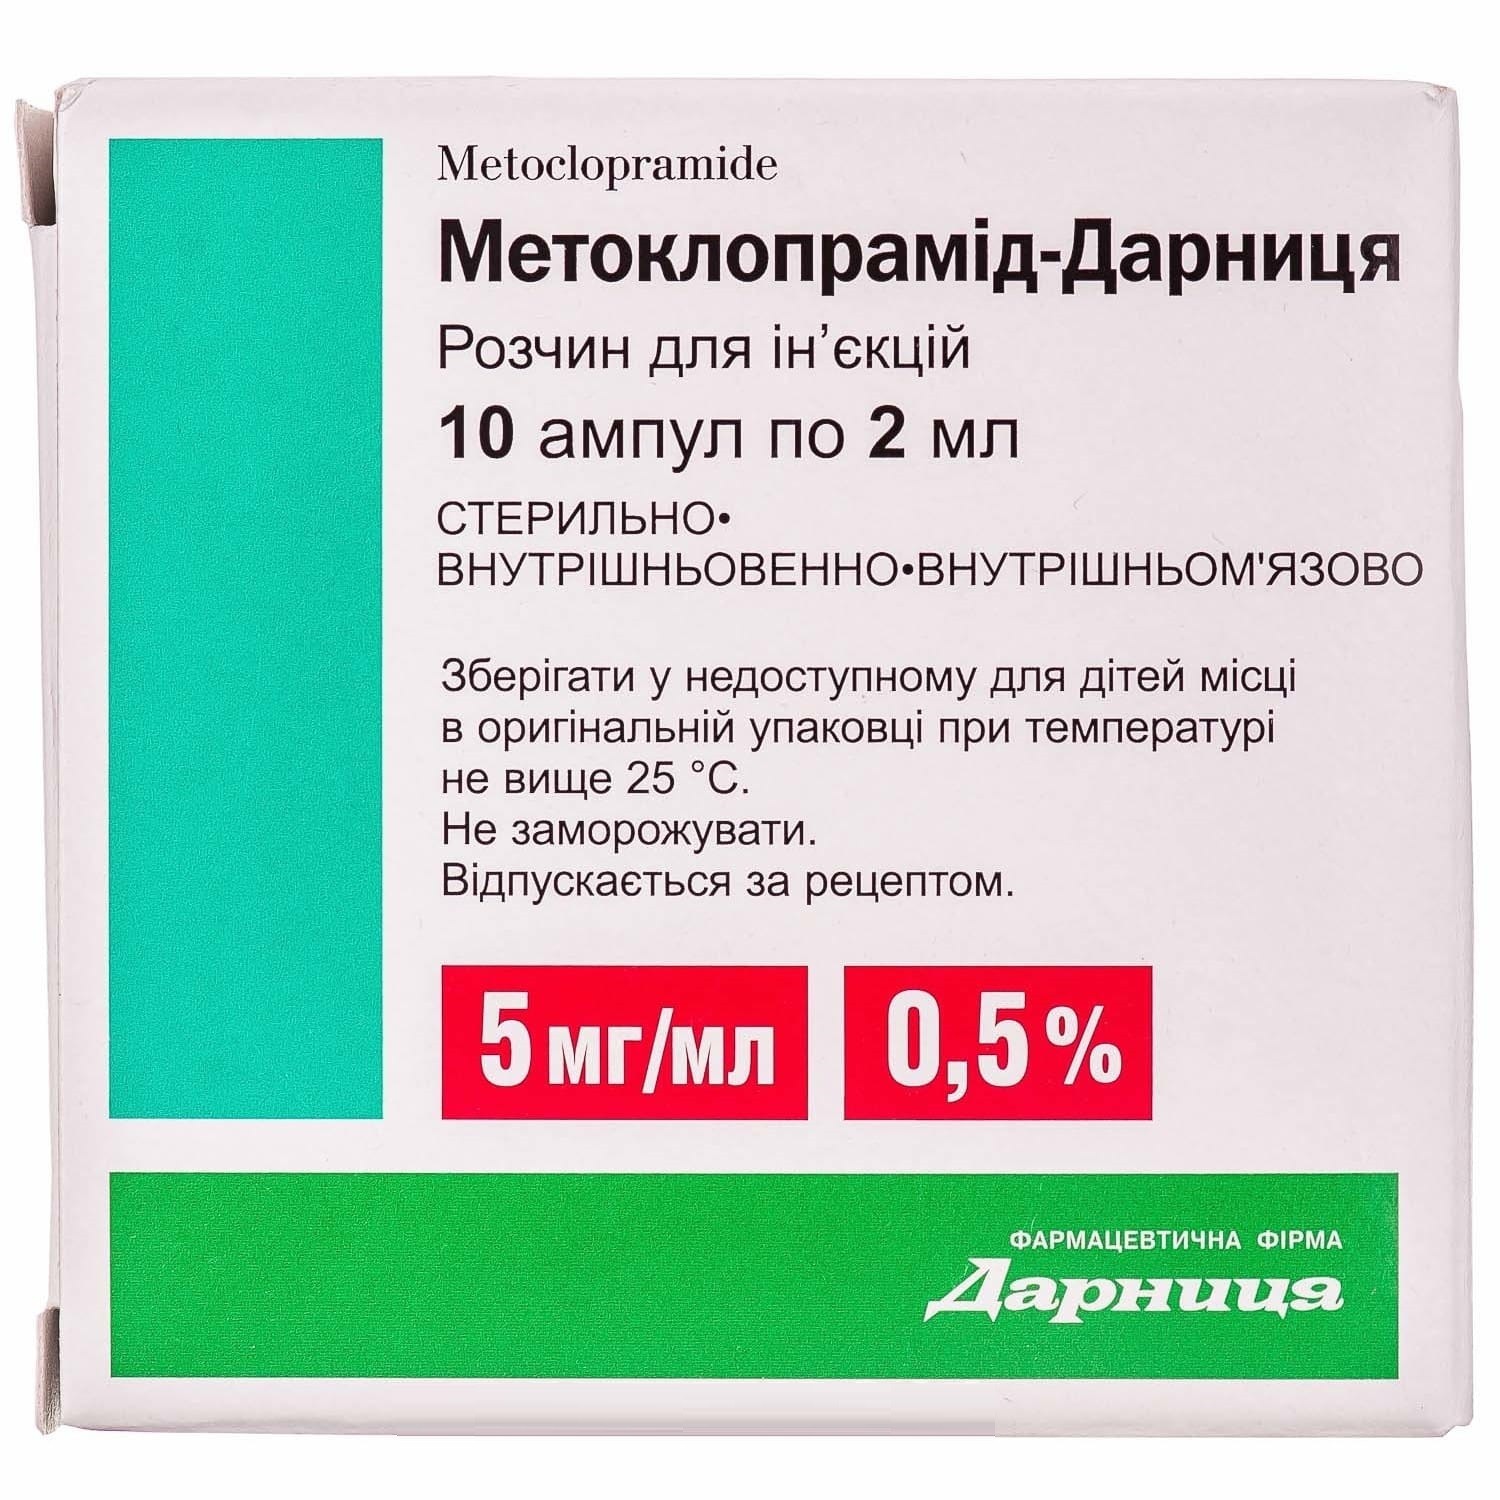 metoclopramide for nausea